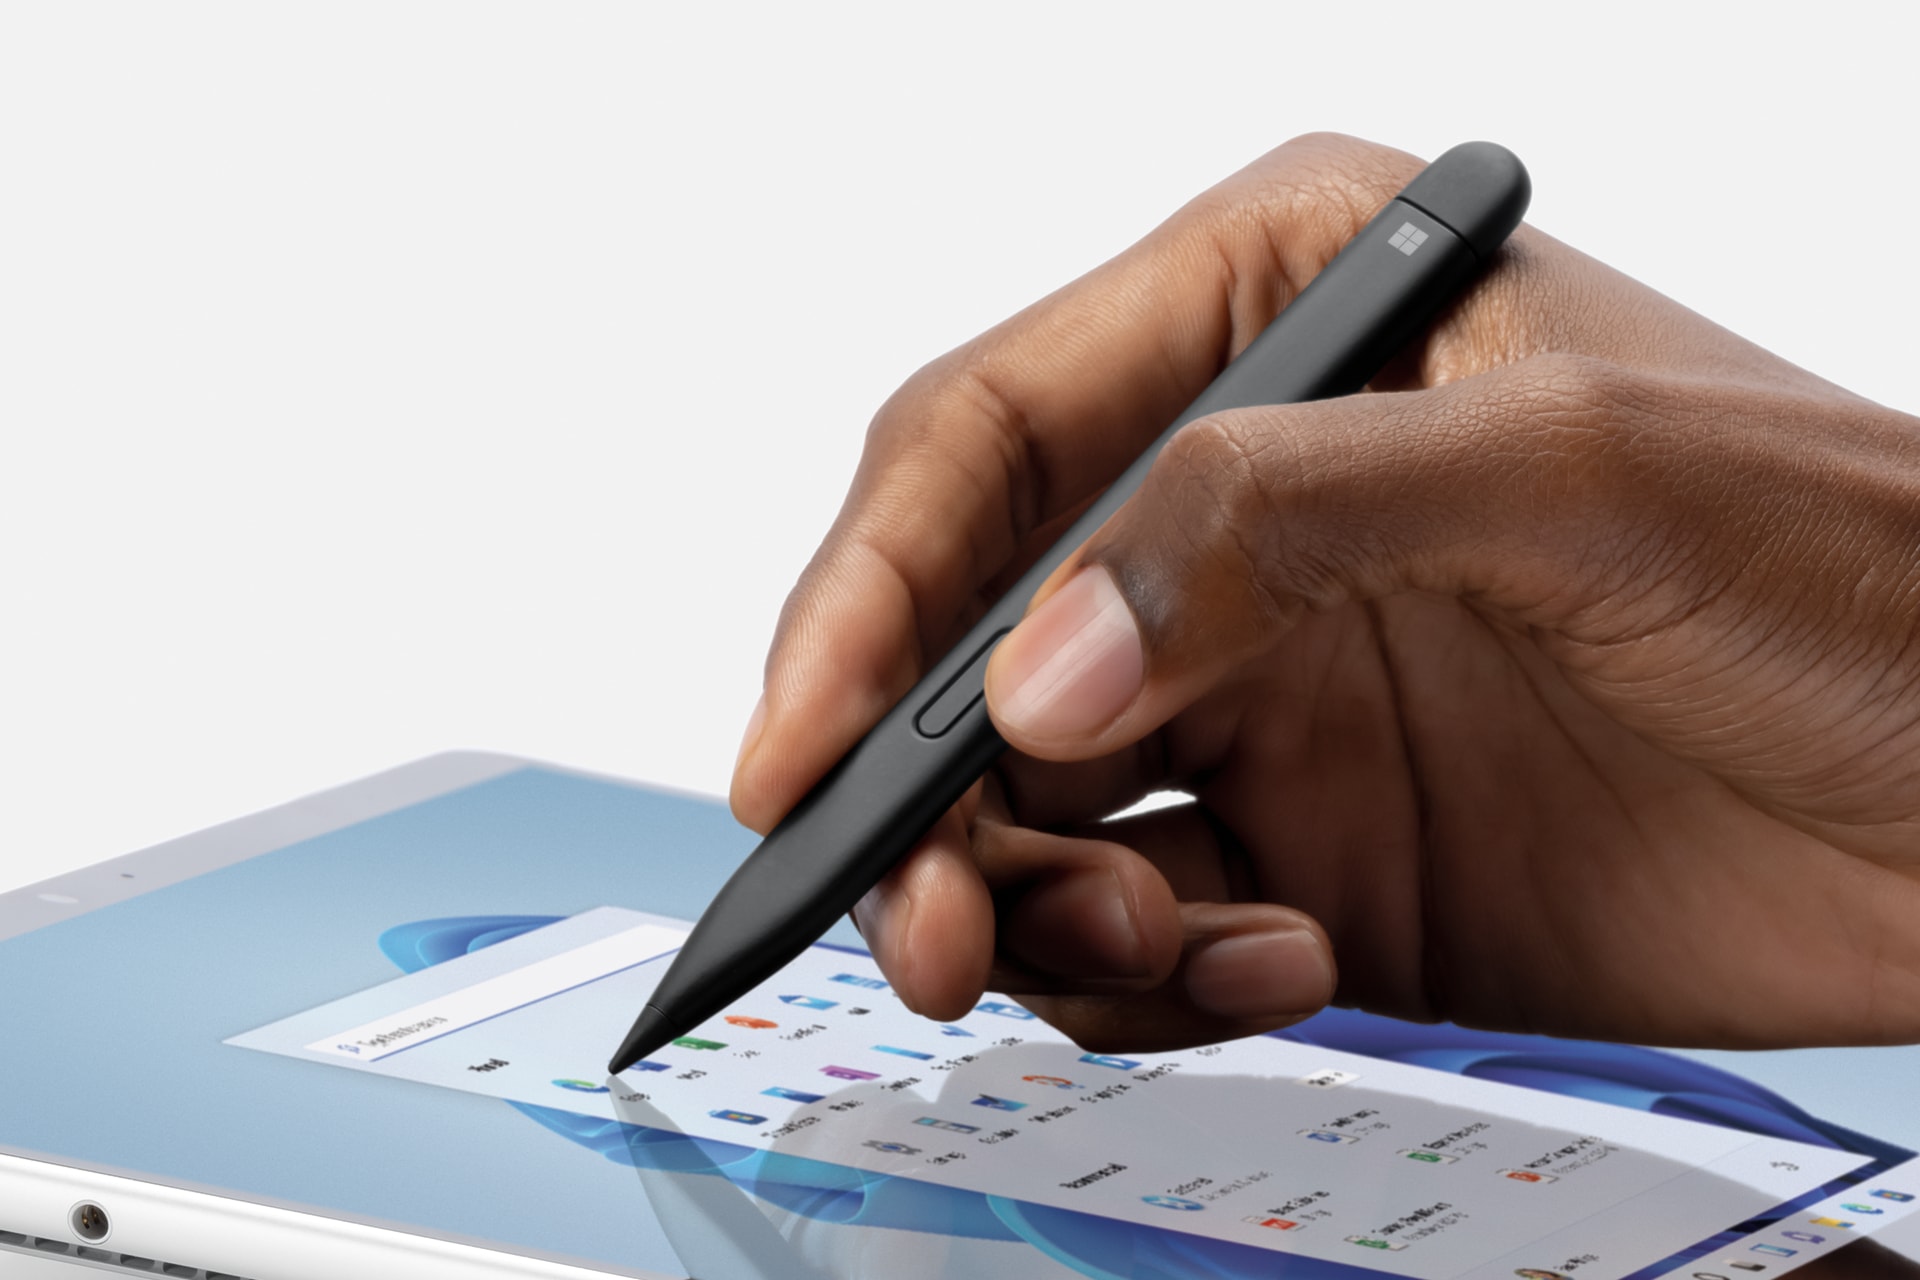 Surface 超薄手寫筆 2 在 Surface Pro 8 上書寫的特寫。